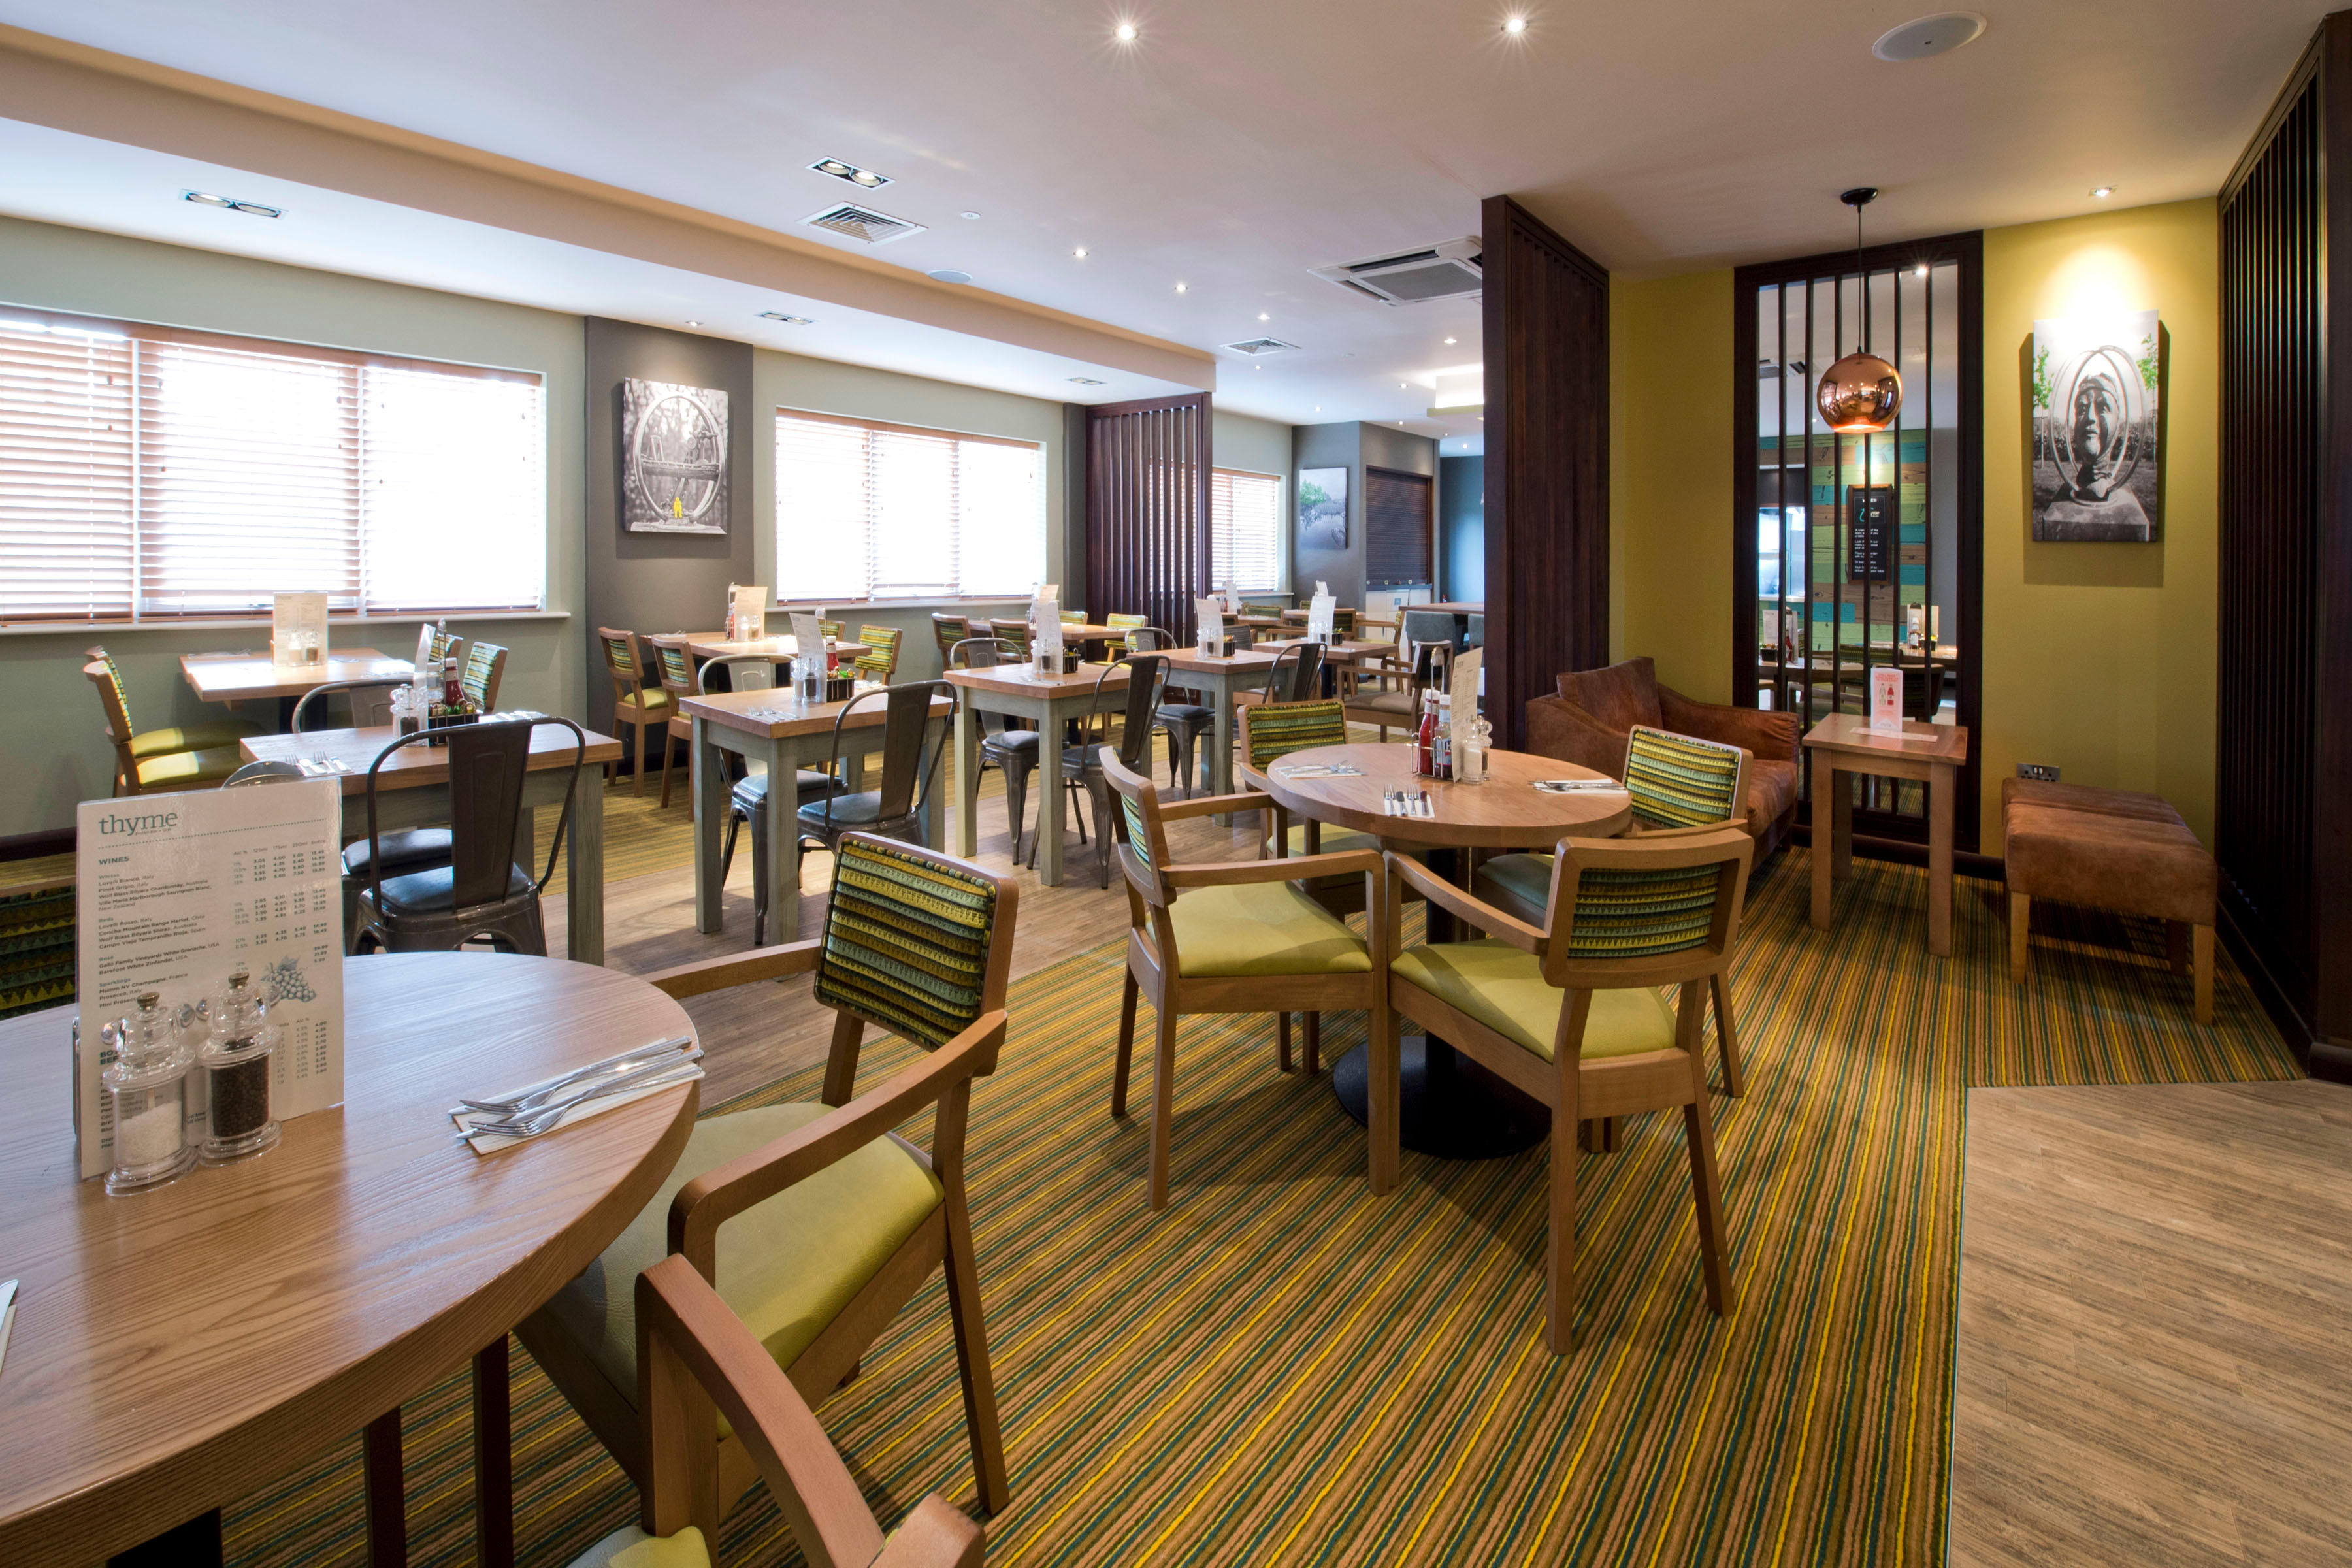 Thyme restaurant Premier Inn Glasgow Braehead hotel Glasgow 03332 346514